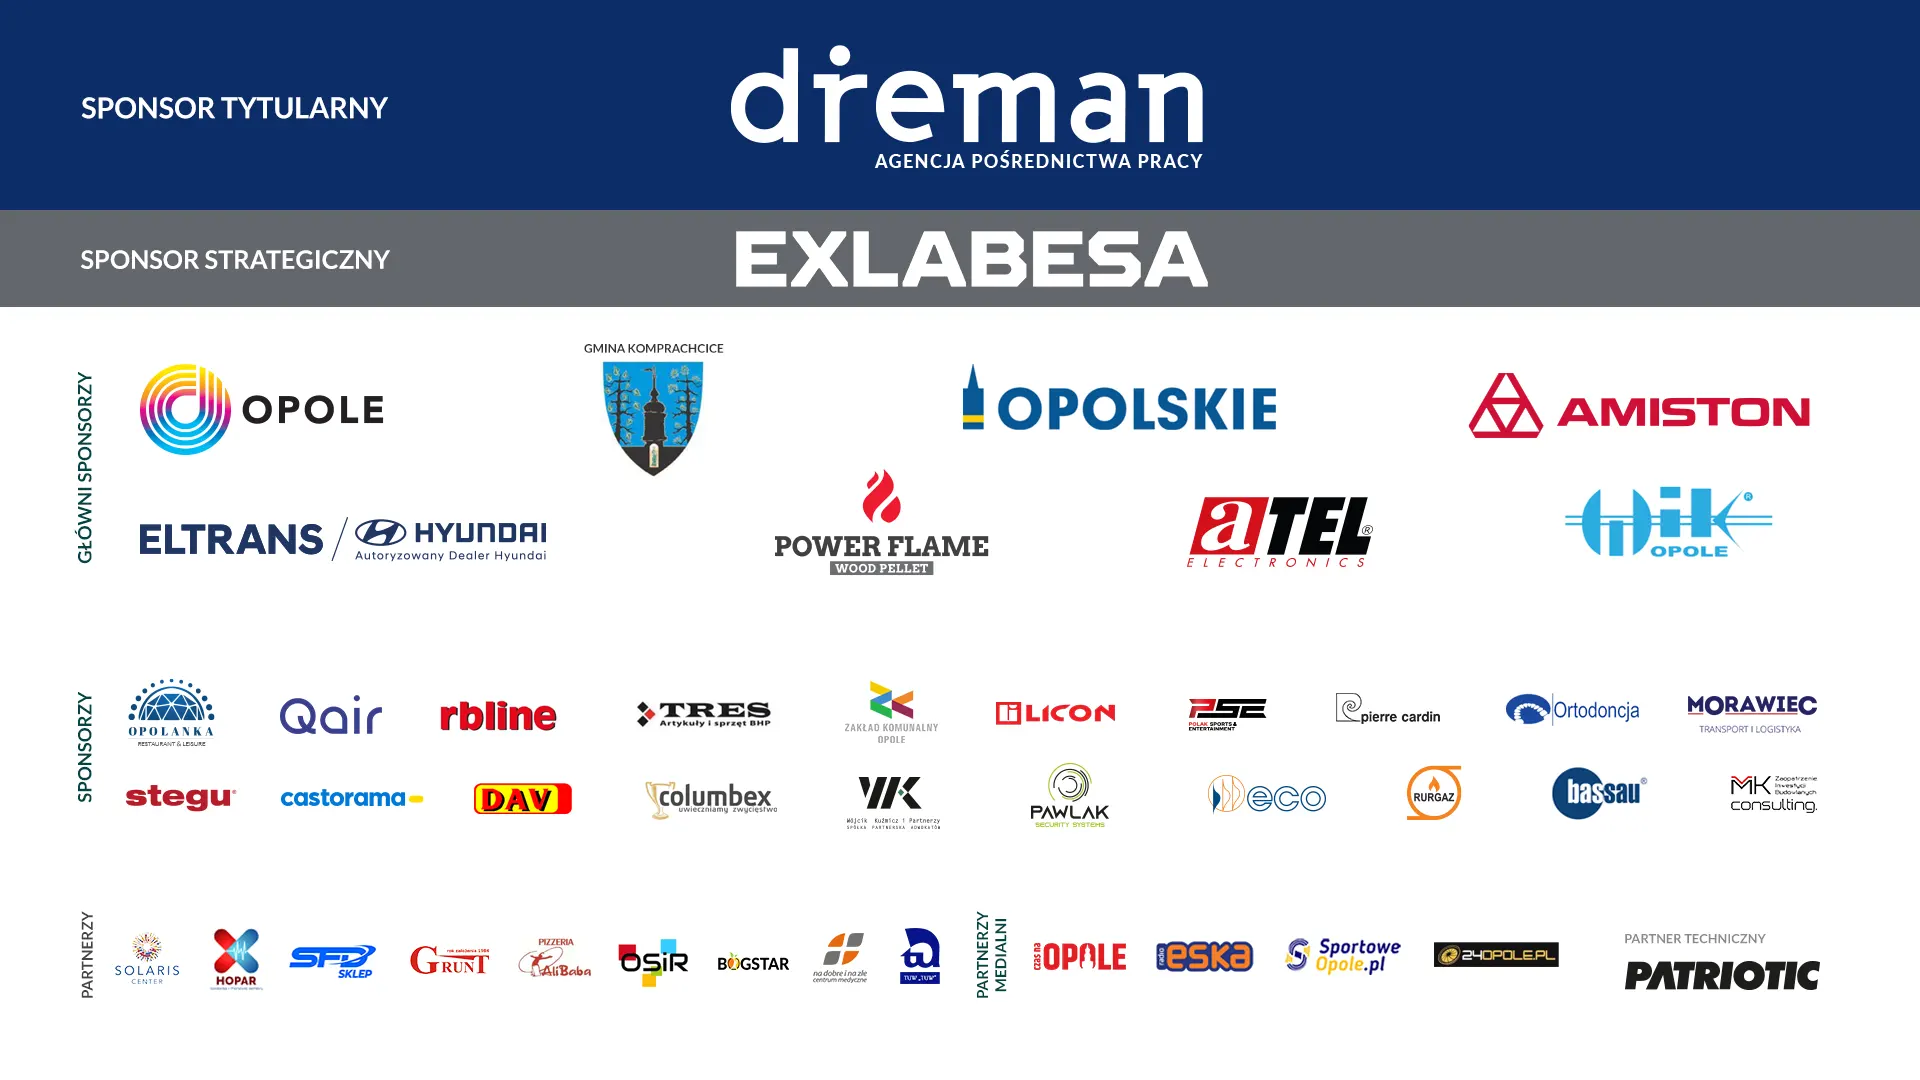 Sponsorzy Dreman futsal Opole Komprachcice